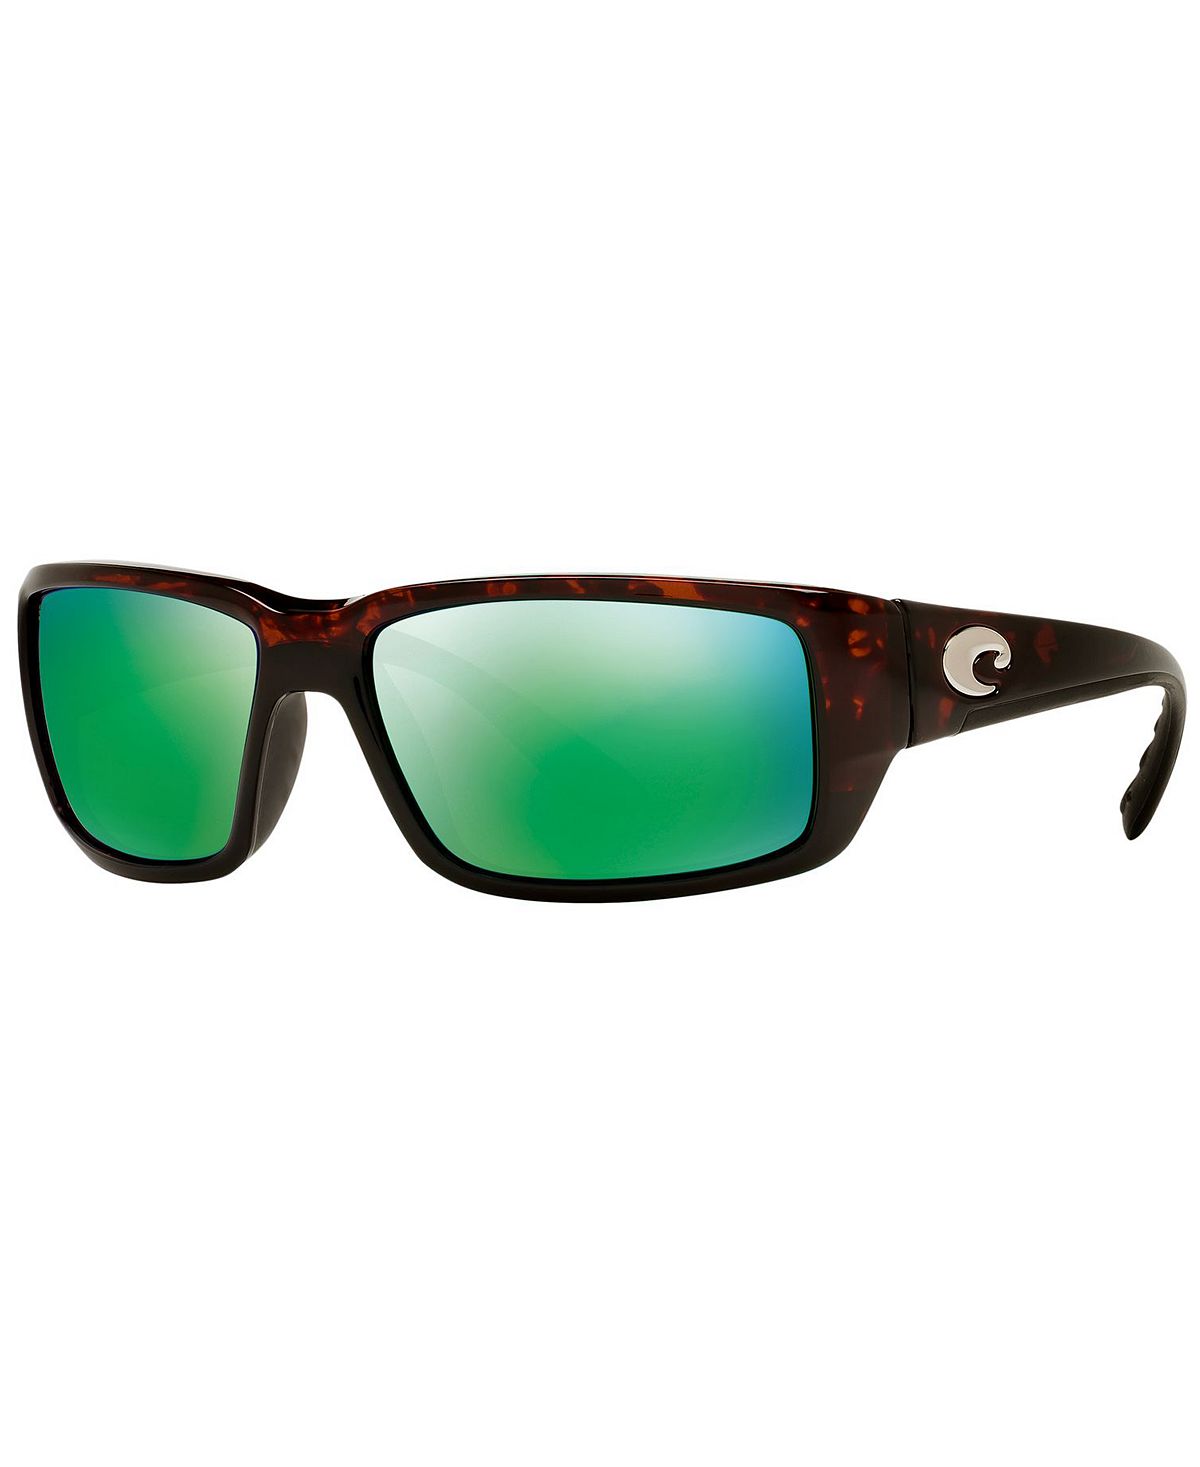 Поляризованные солнцезащитные очки FANTAIL 59P Costa Del Mar